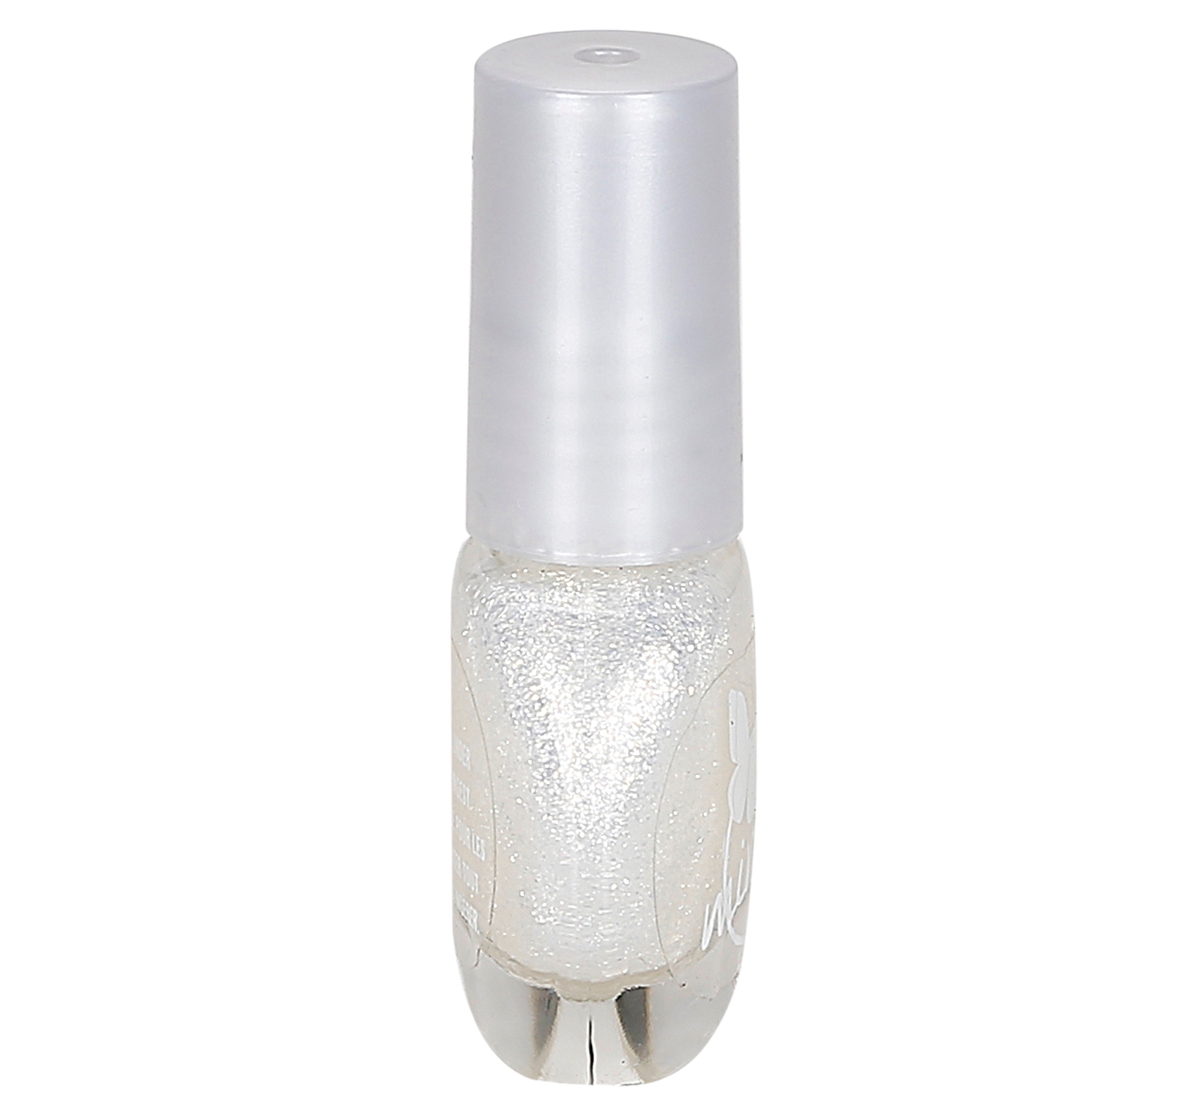 Mirada 3.8Ml Nail Polish Glitter for kids 3Y+, White